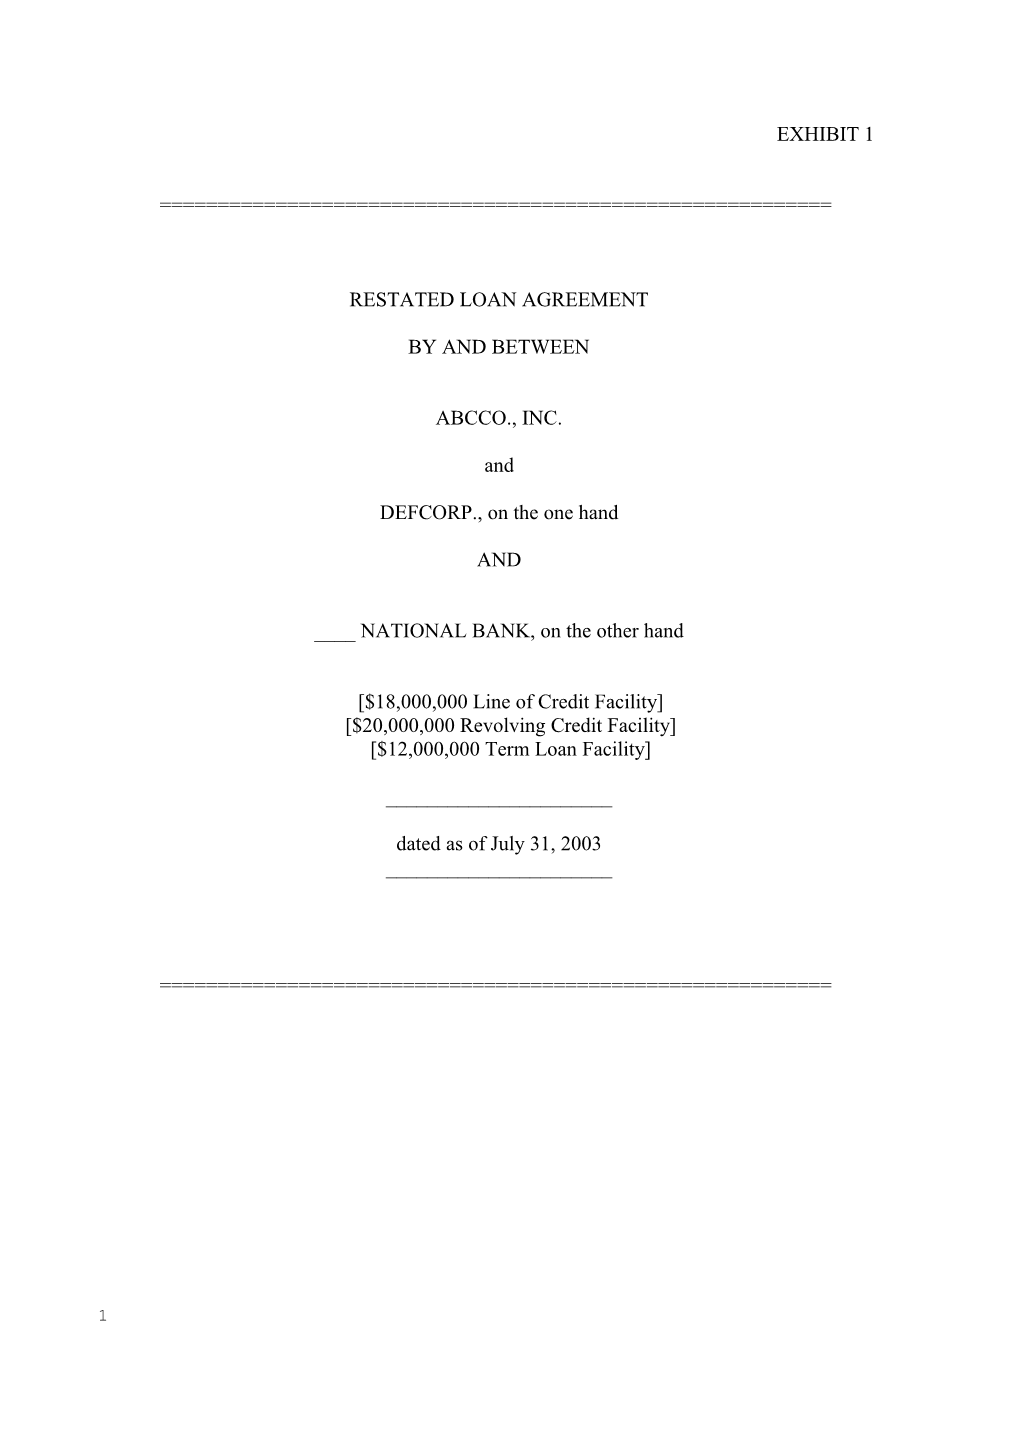 Restated Loan Agt Revised 11 25 03 (00005376;1)